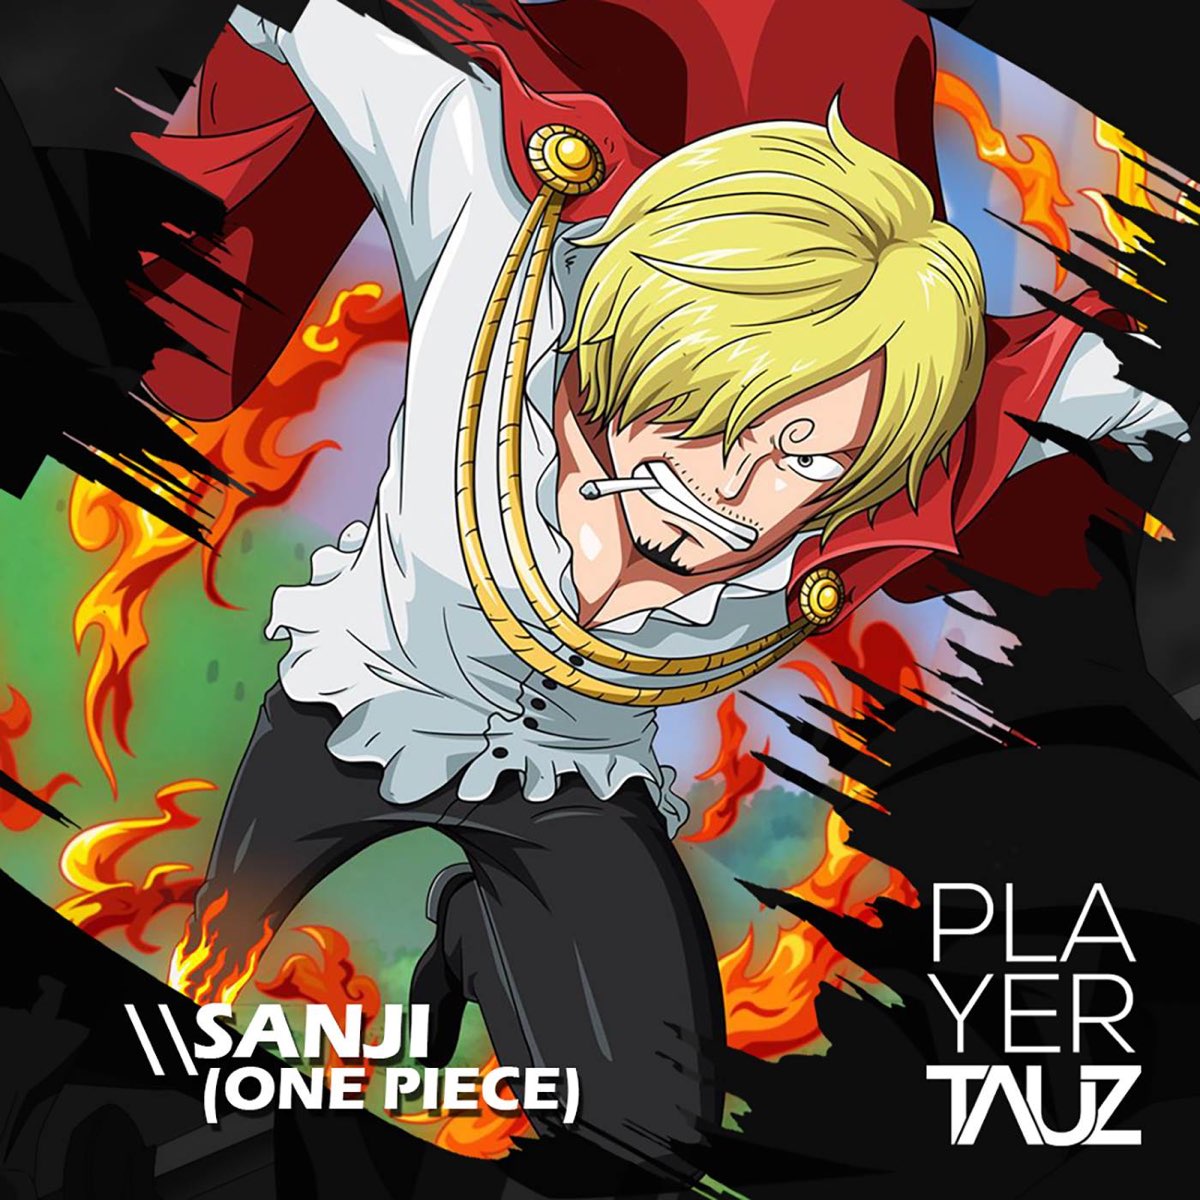 Sanji (One Piece) - Single - Album by Tauz - Apple Music